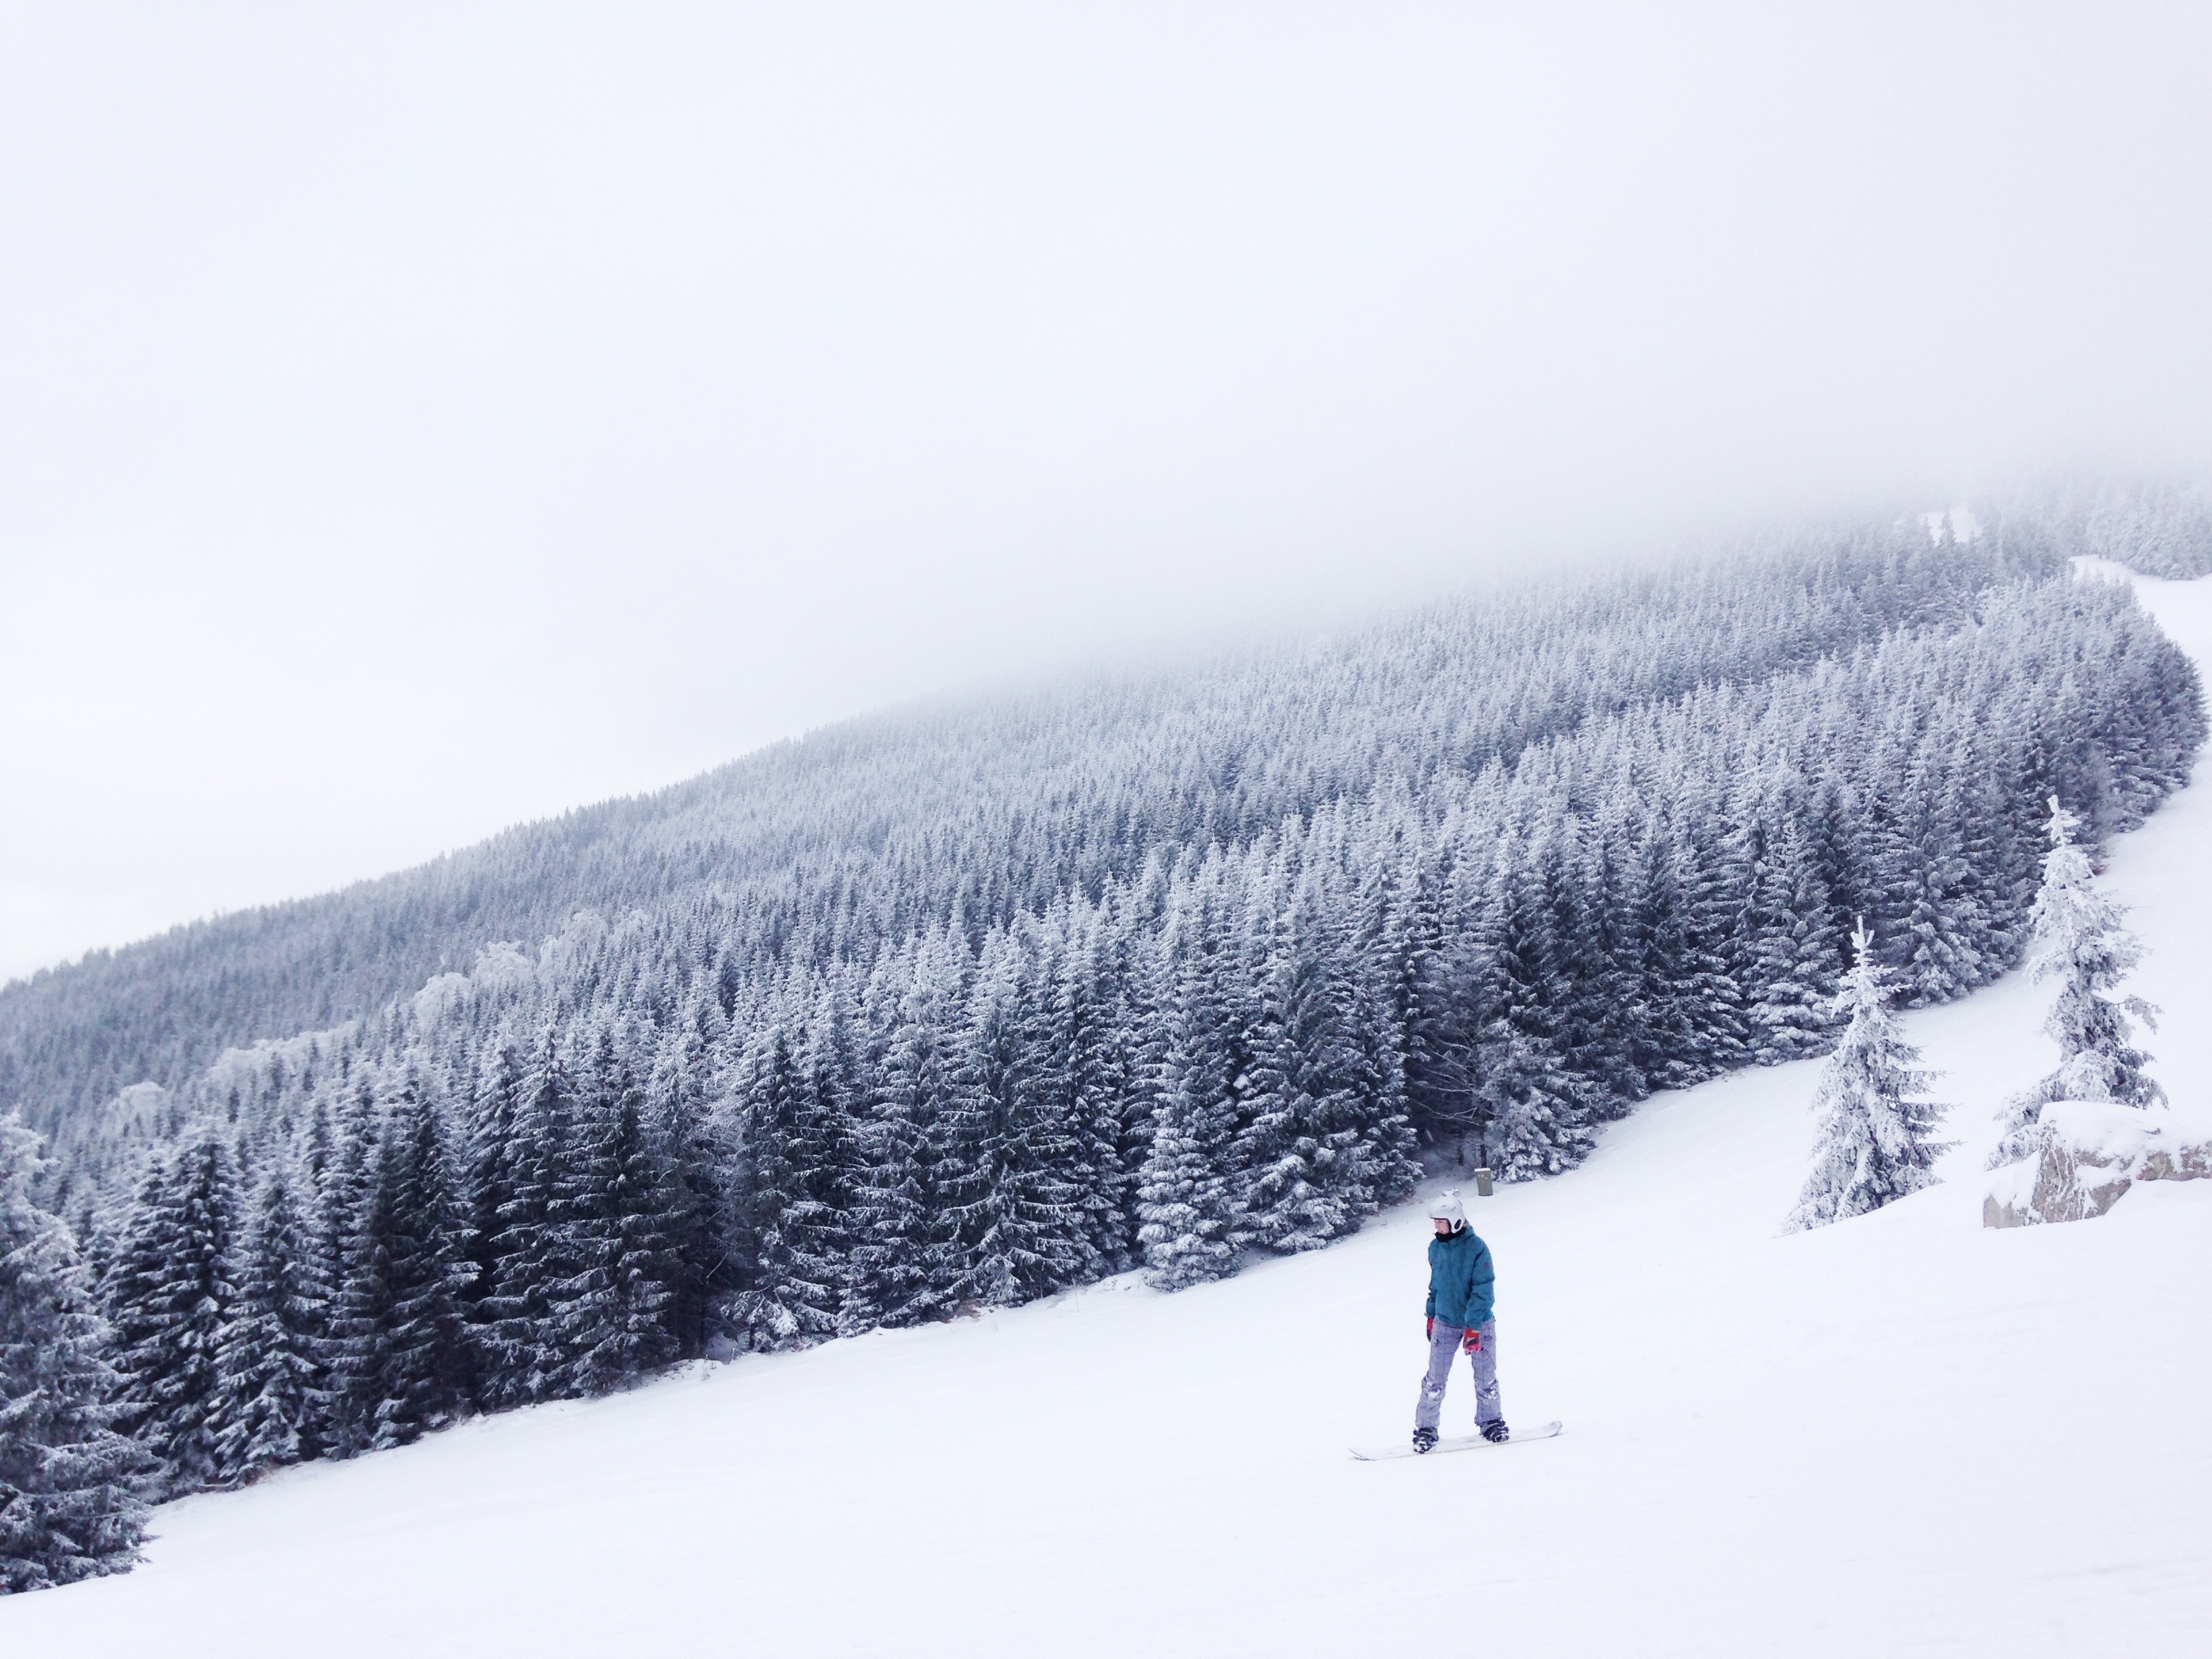 Dans la neige, photo de Tomas Kodydek, via unsplash